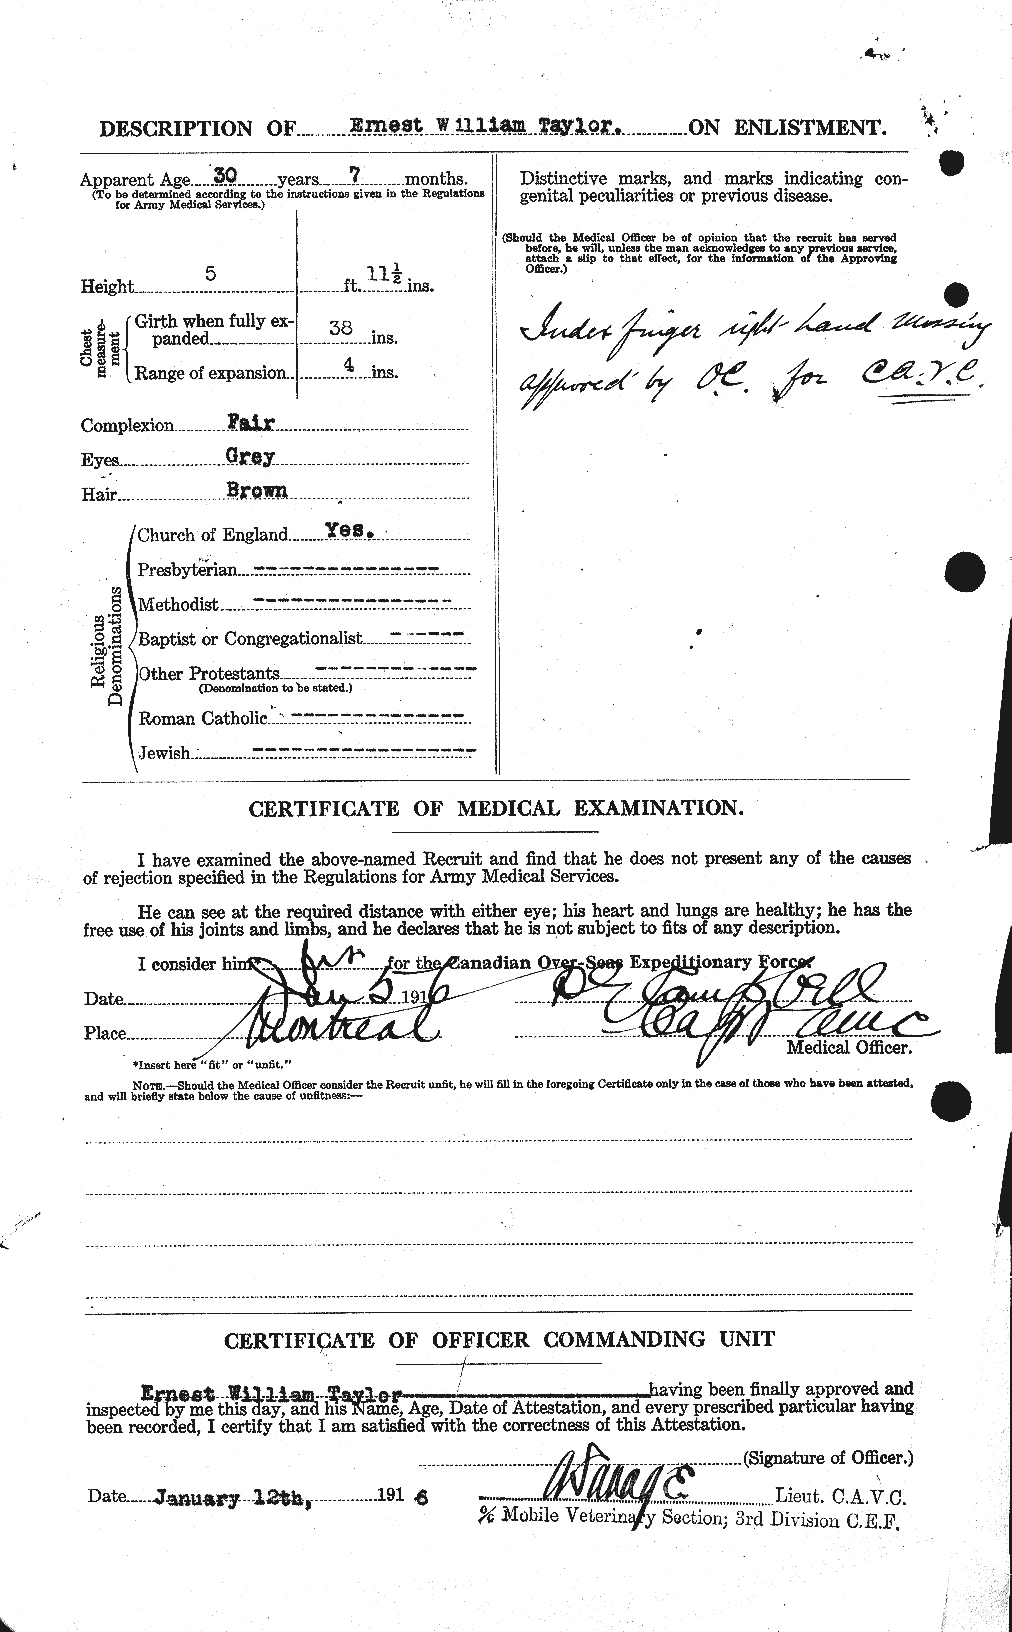 Dossiers du Personnel de la Première Guerre mondiale - CEC 627406b